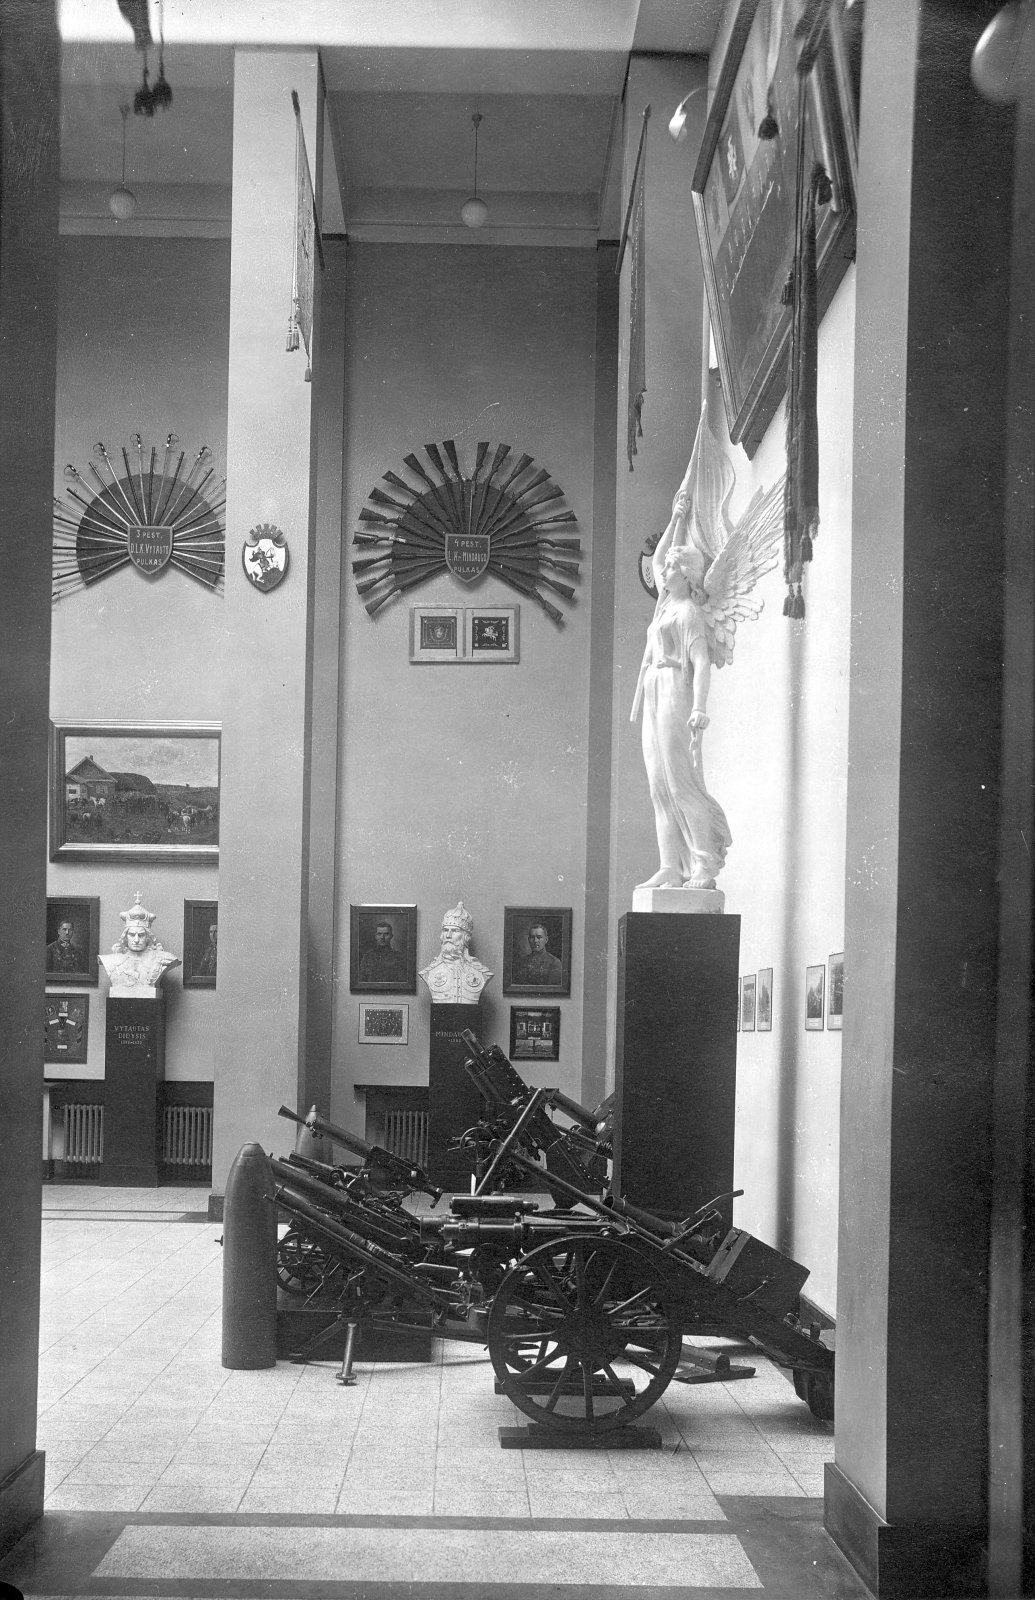 6 il. Vytauto Didžiojo karo muziejaus Didžiosios salės dalis. 1937 m. Fotografas J. Timukas. Vytauto Didžiojo karo muziejaus nuosavybė, N – 617